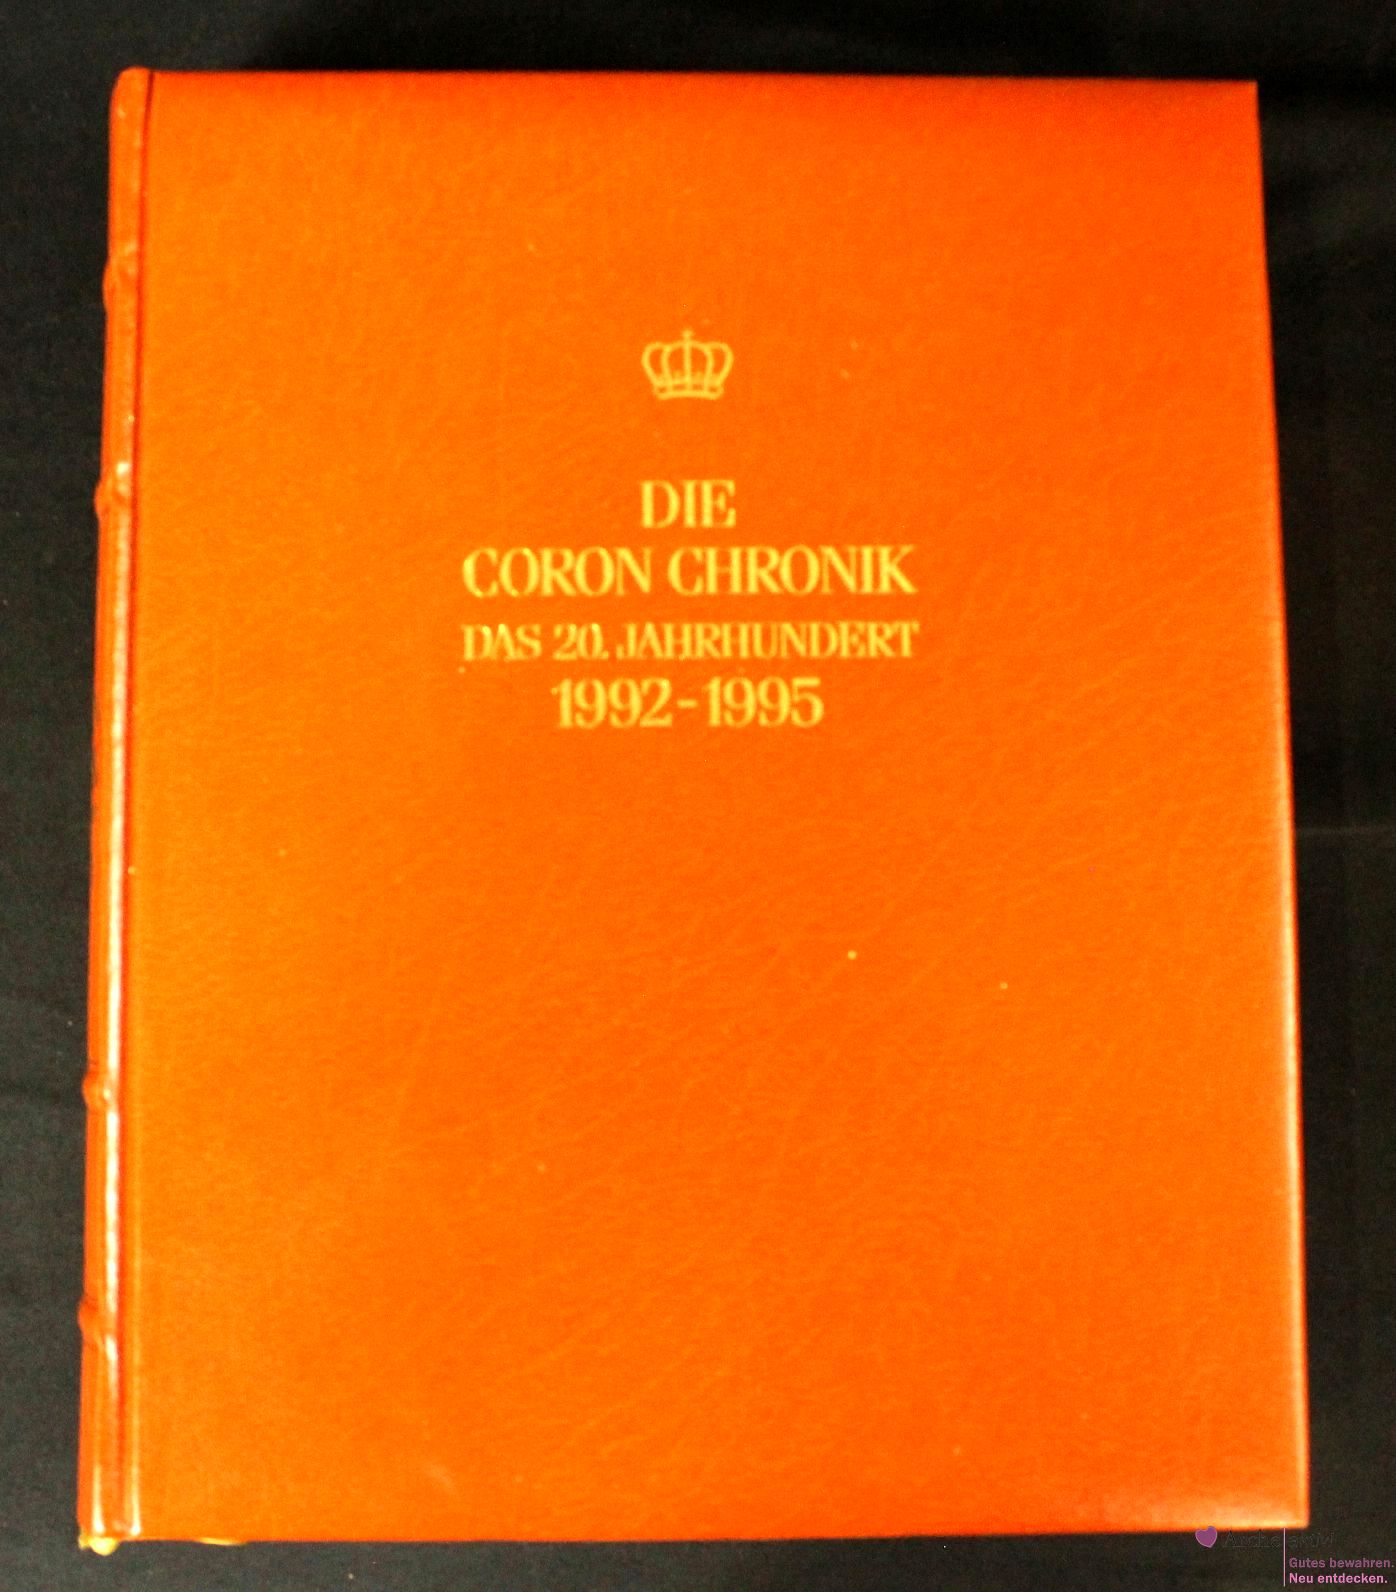 Die Coron Chronik - Das 20. Jahrhundert 1992 - 1995, Band 24, mit Gold-Kopfschnitt, gebraucht